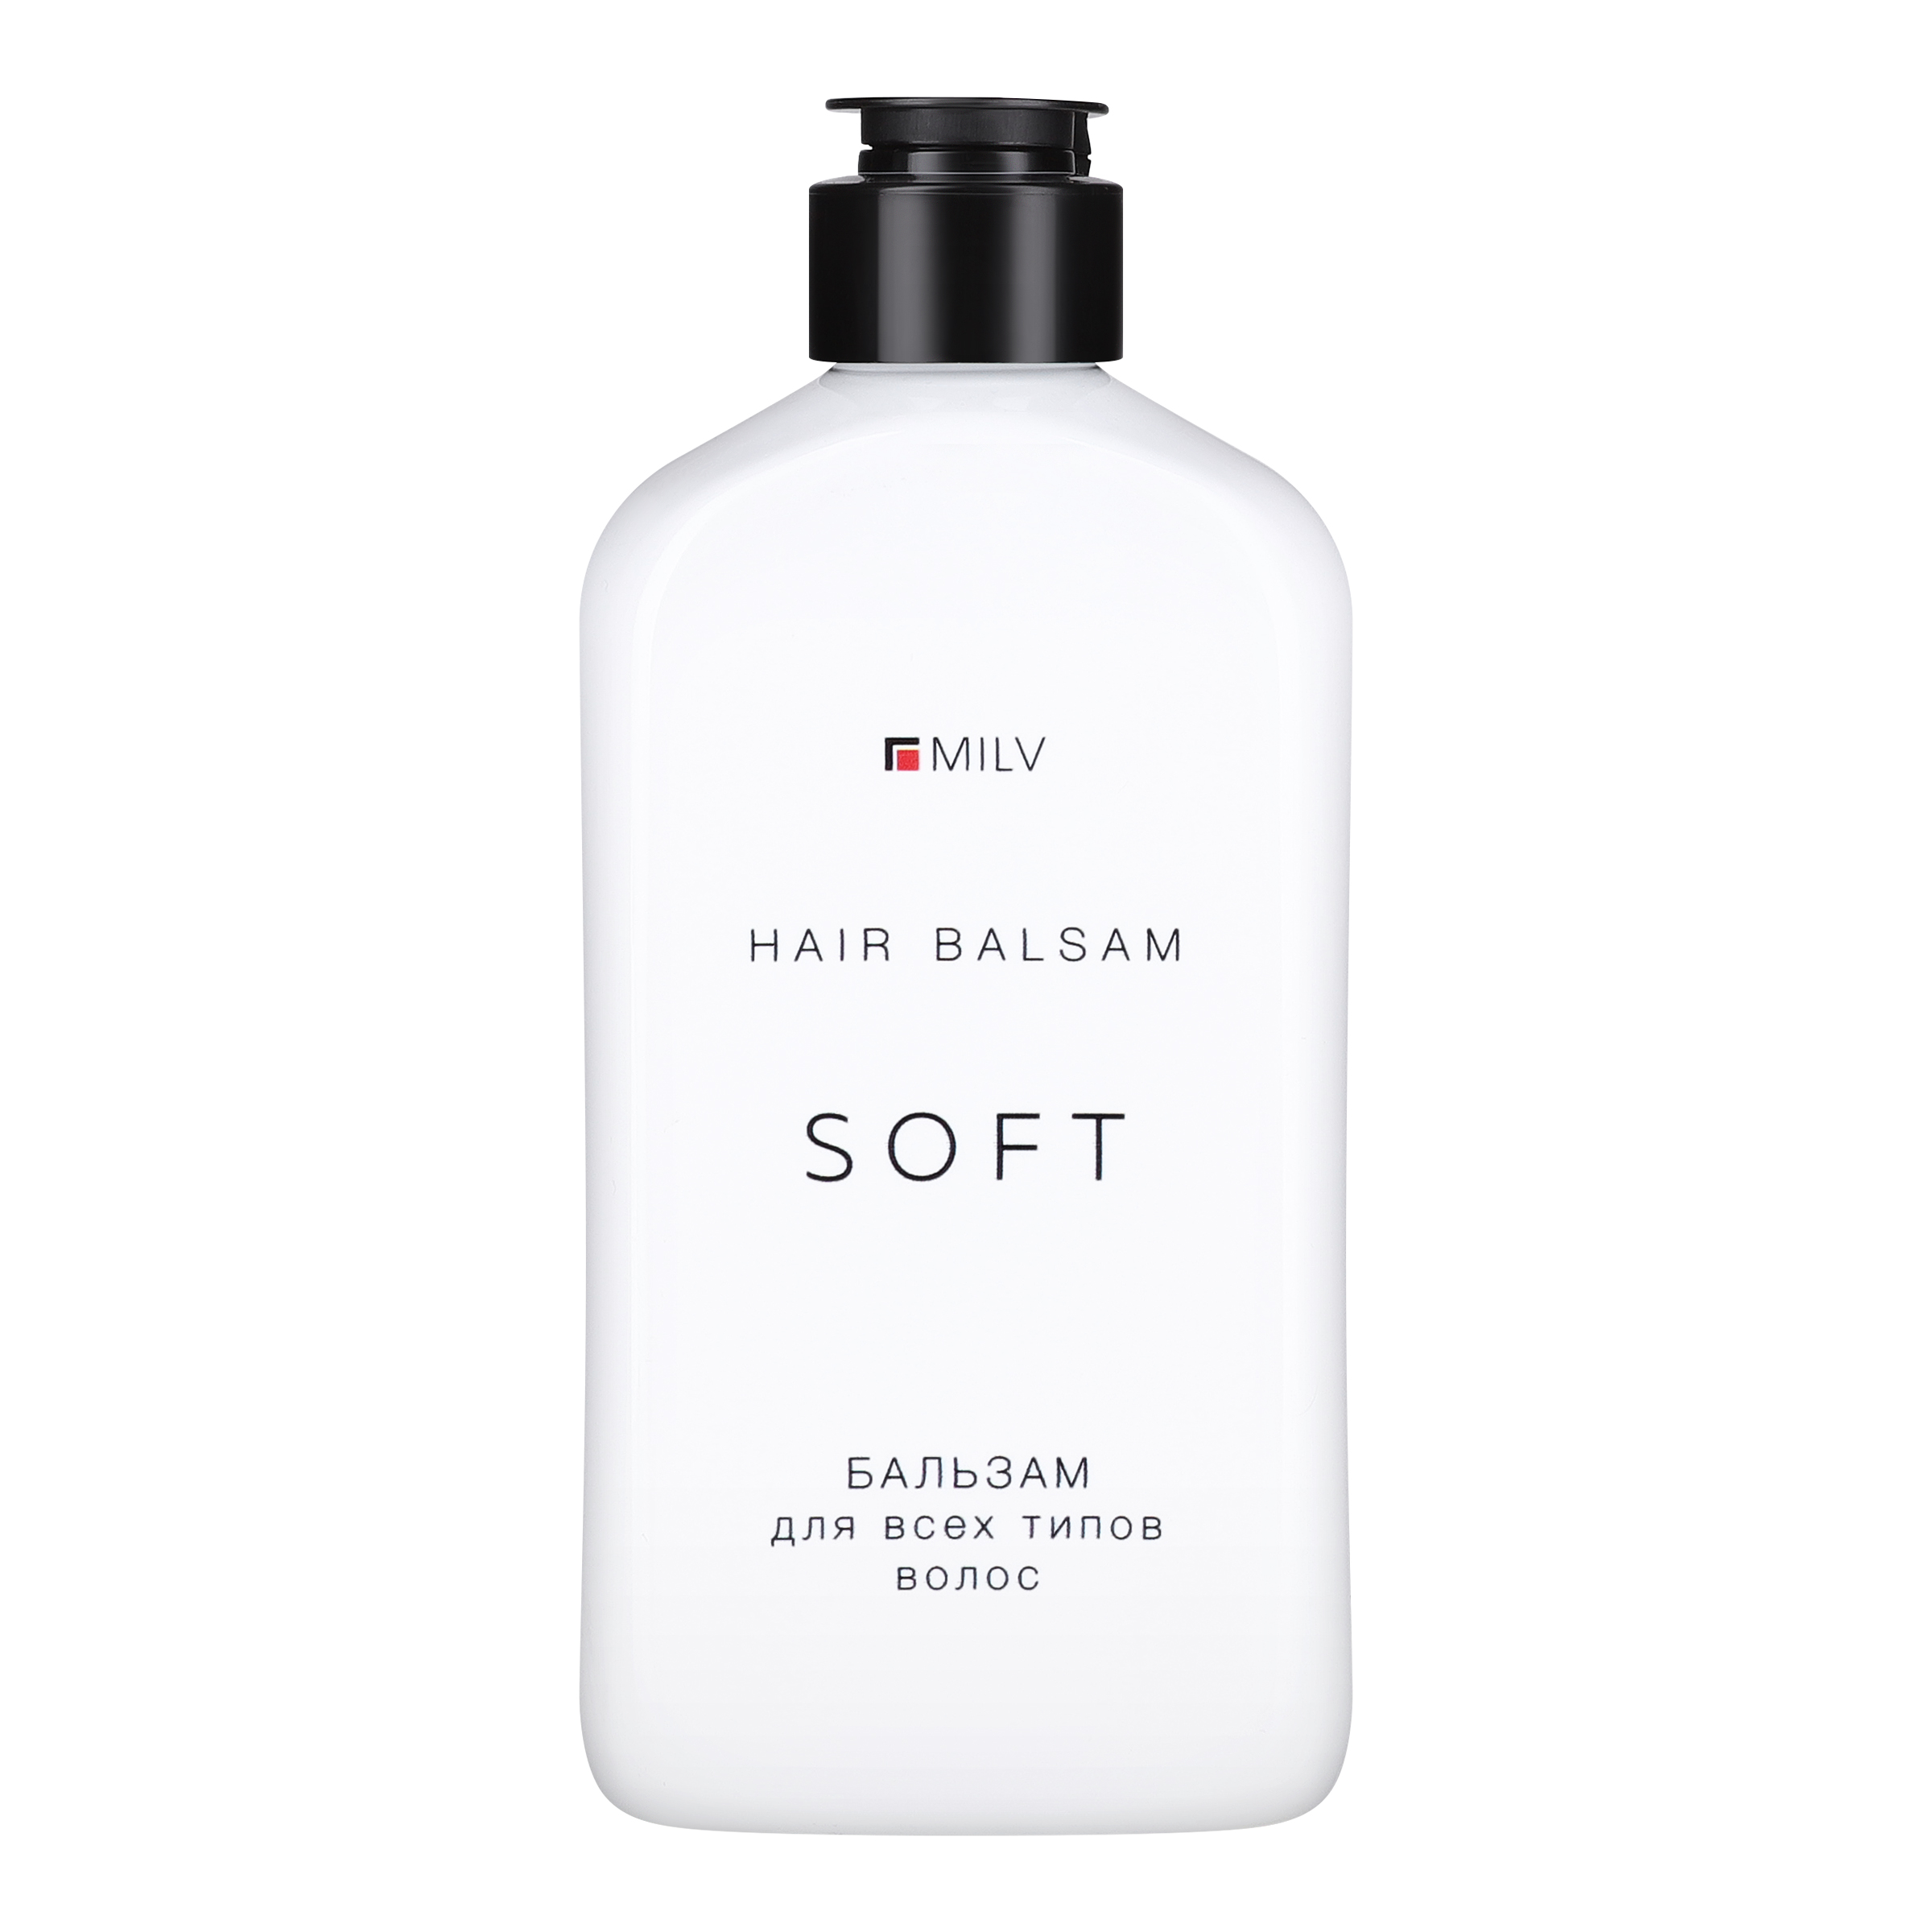 Мягкий бальзам Milv SOFT для всех типов волос 340 мл мое солнышко бальзам д губ ваниль 2 8г